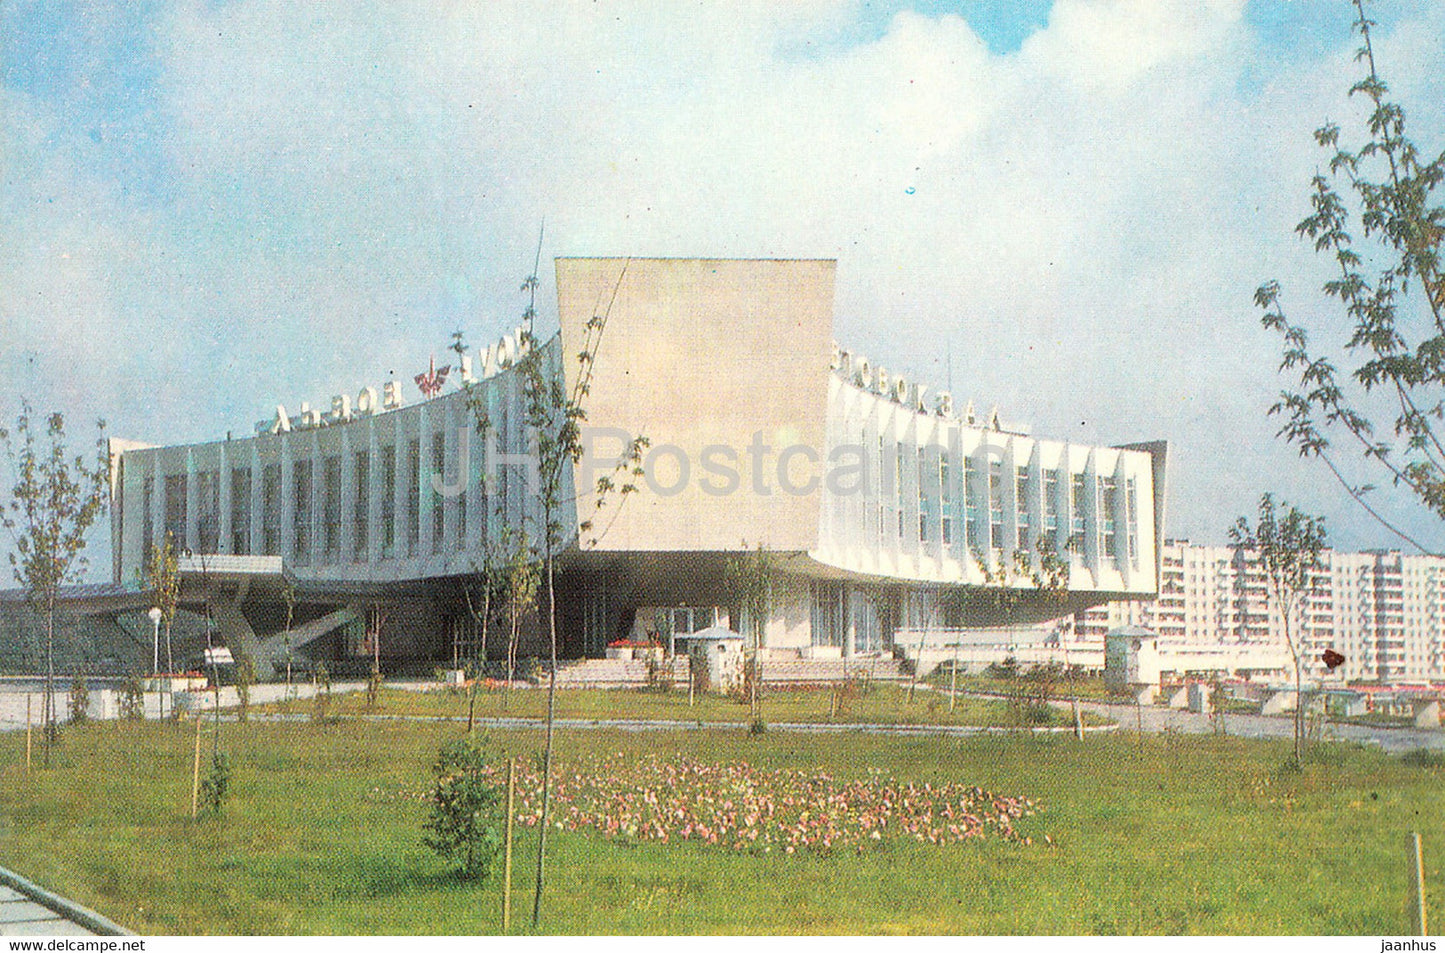 Lviv - Lvov - bus station - 1981 - Ukraine USSR - unused - JH Postcards